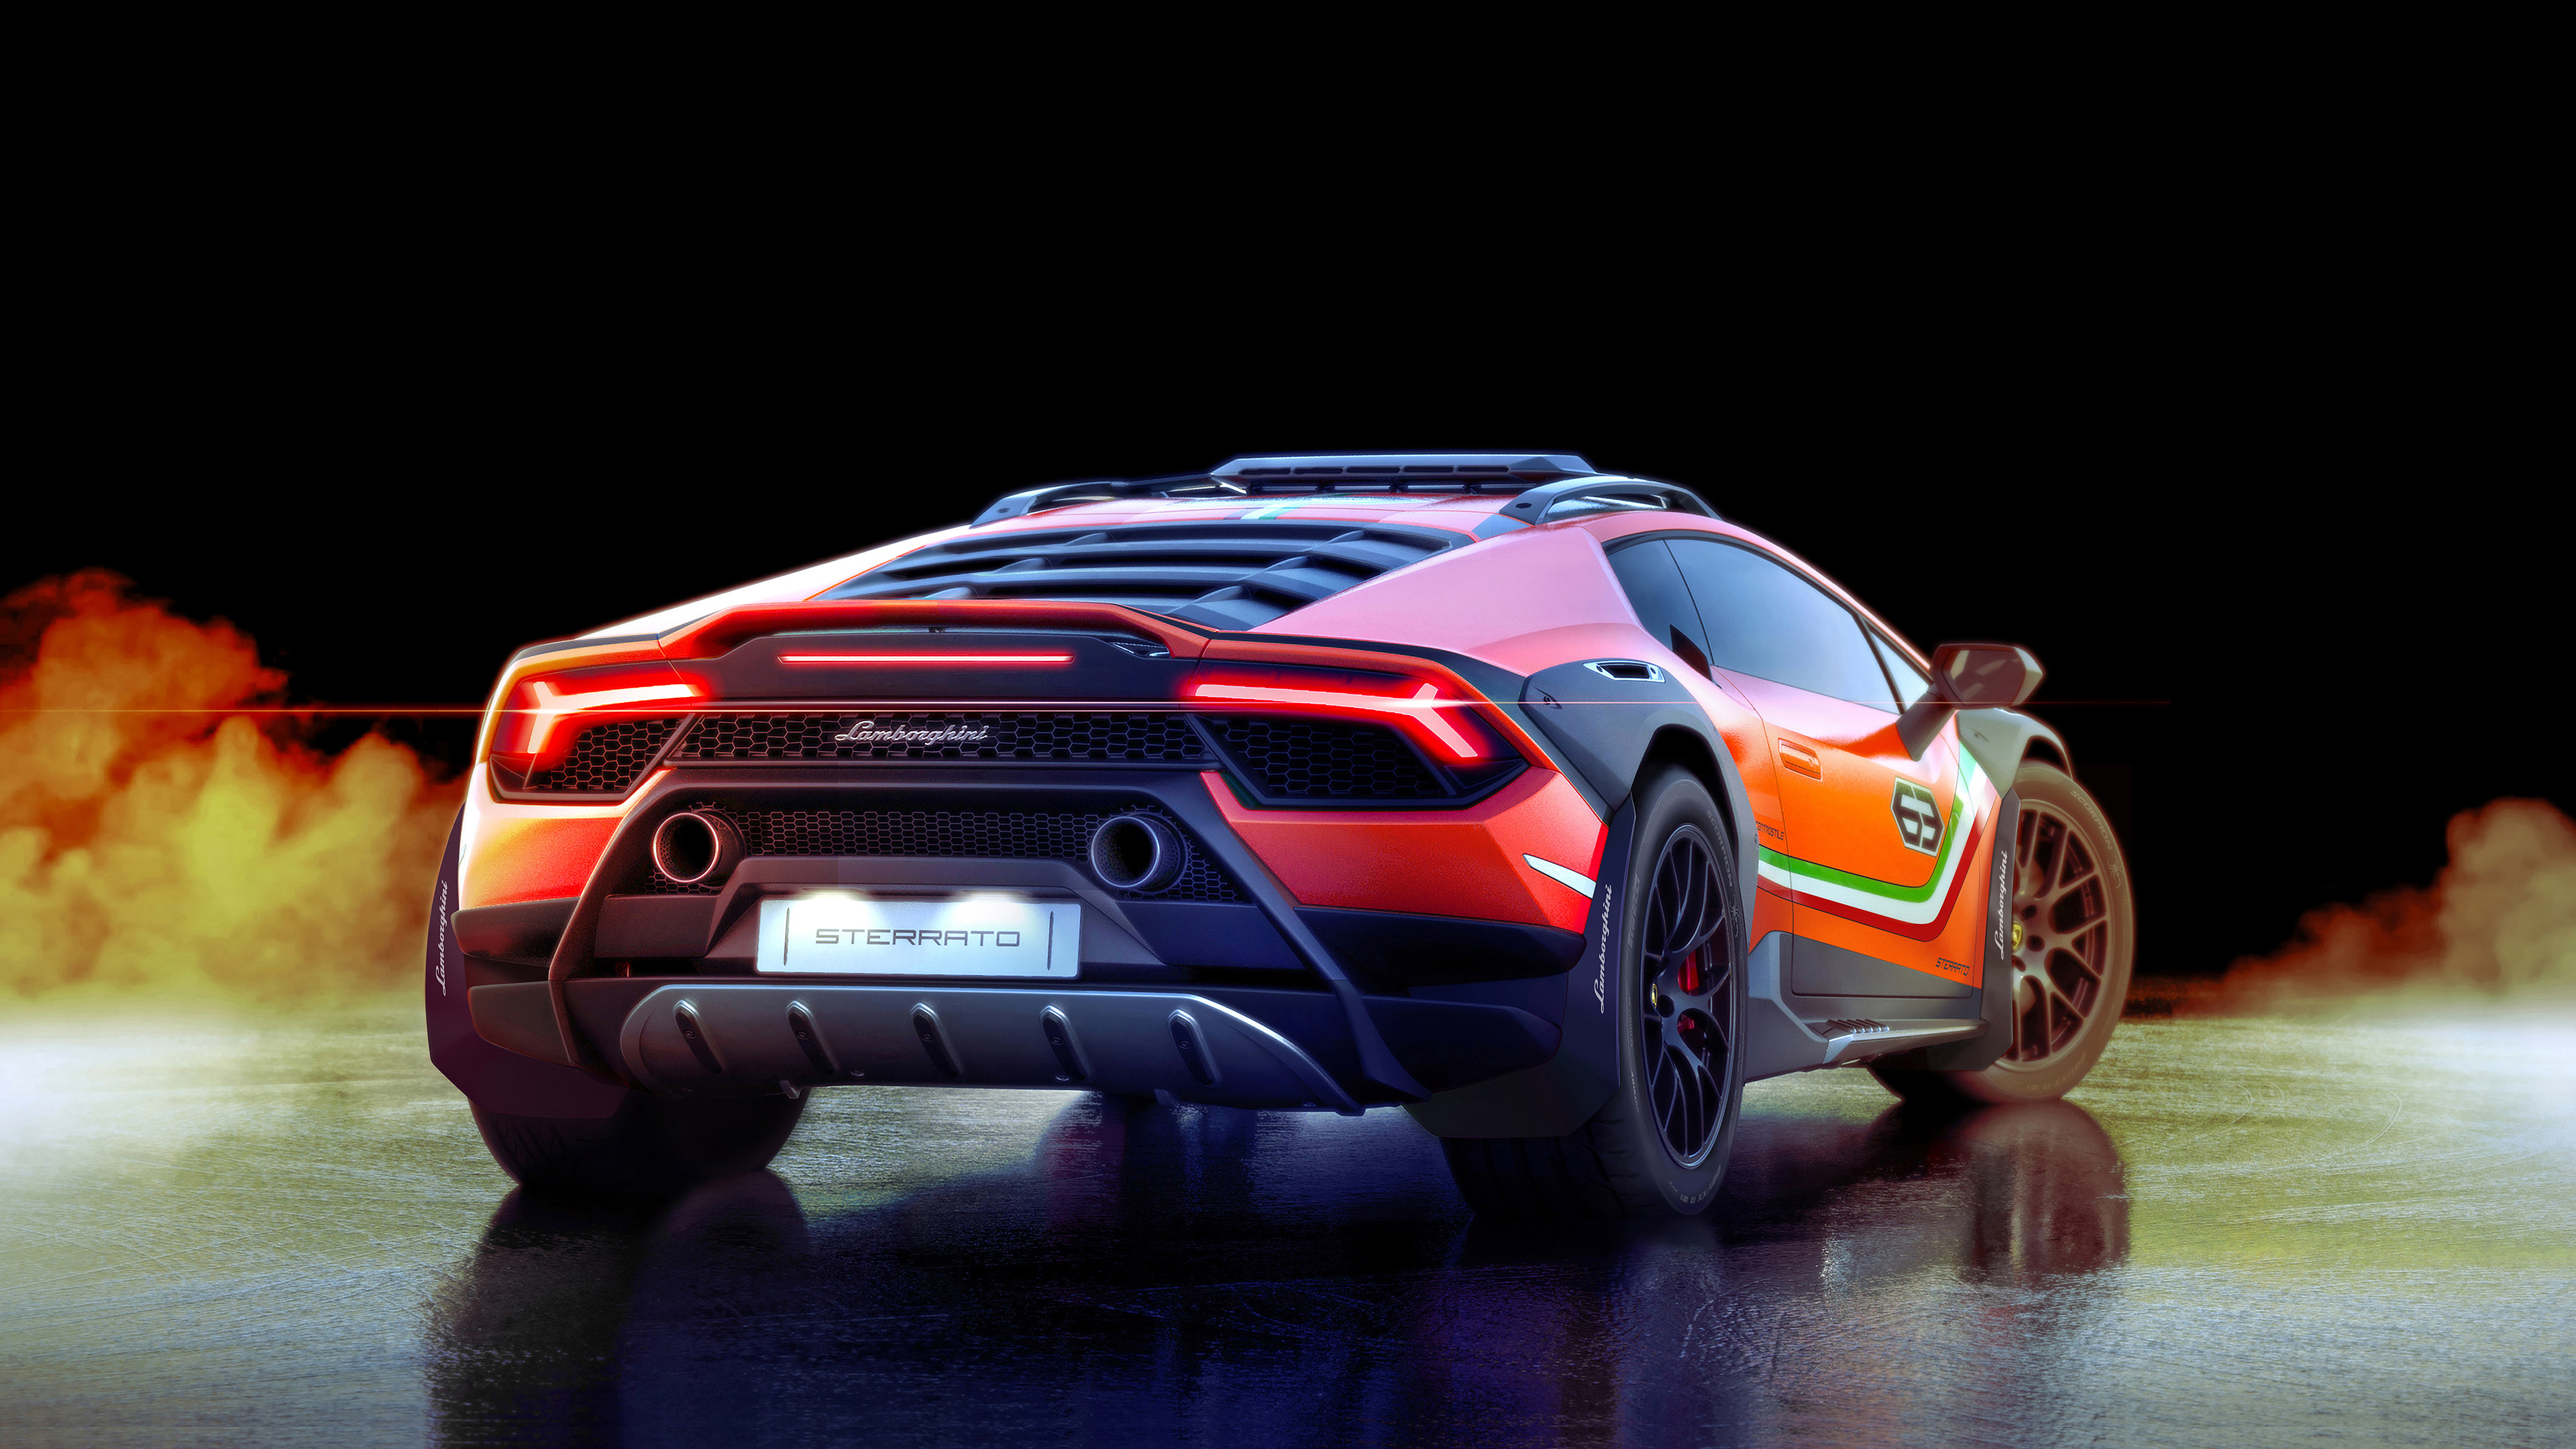  2019 Lamborghini Huracan Sterrato Concept Wallpaper.